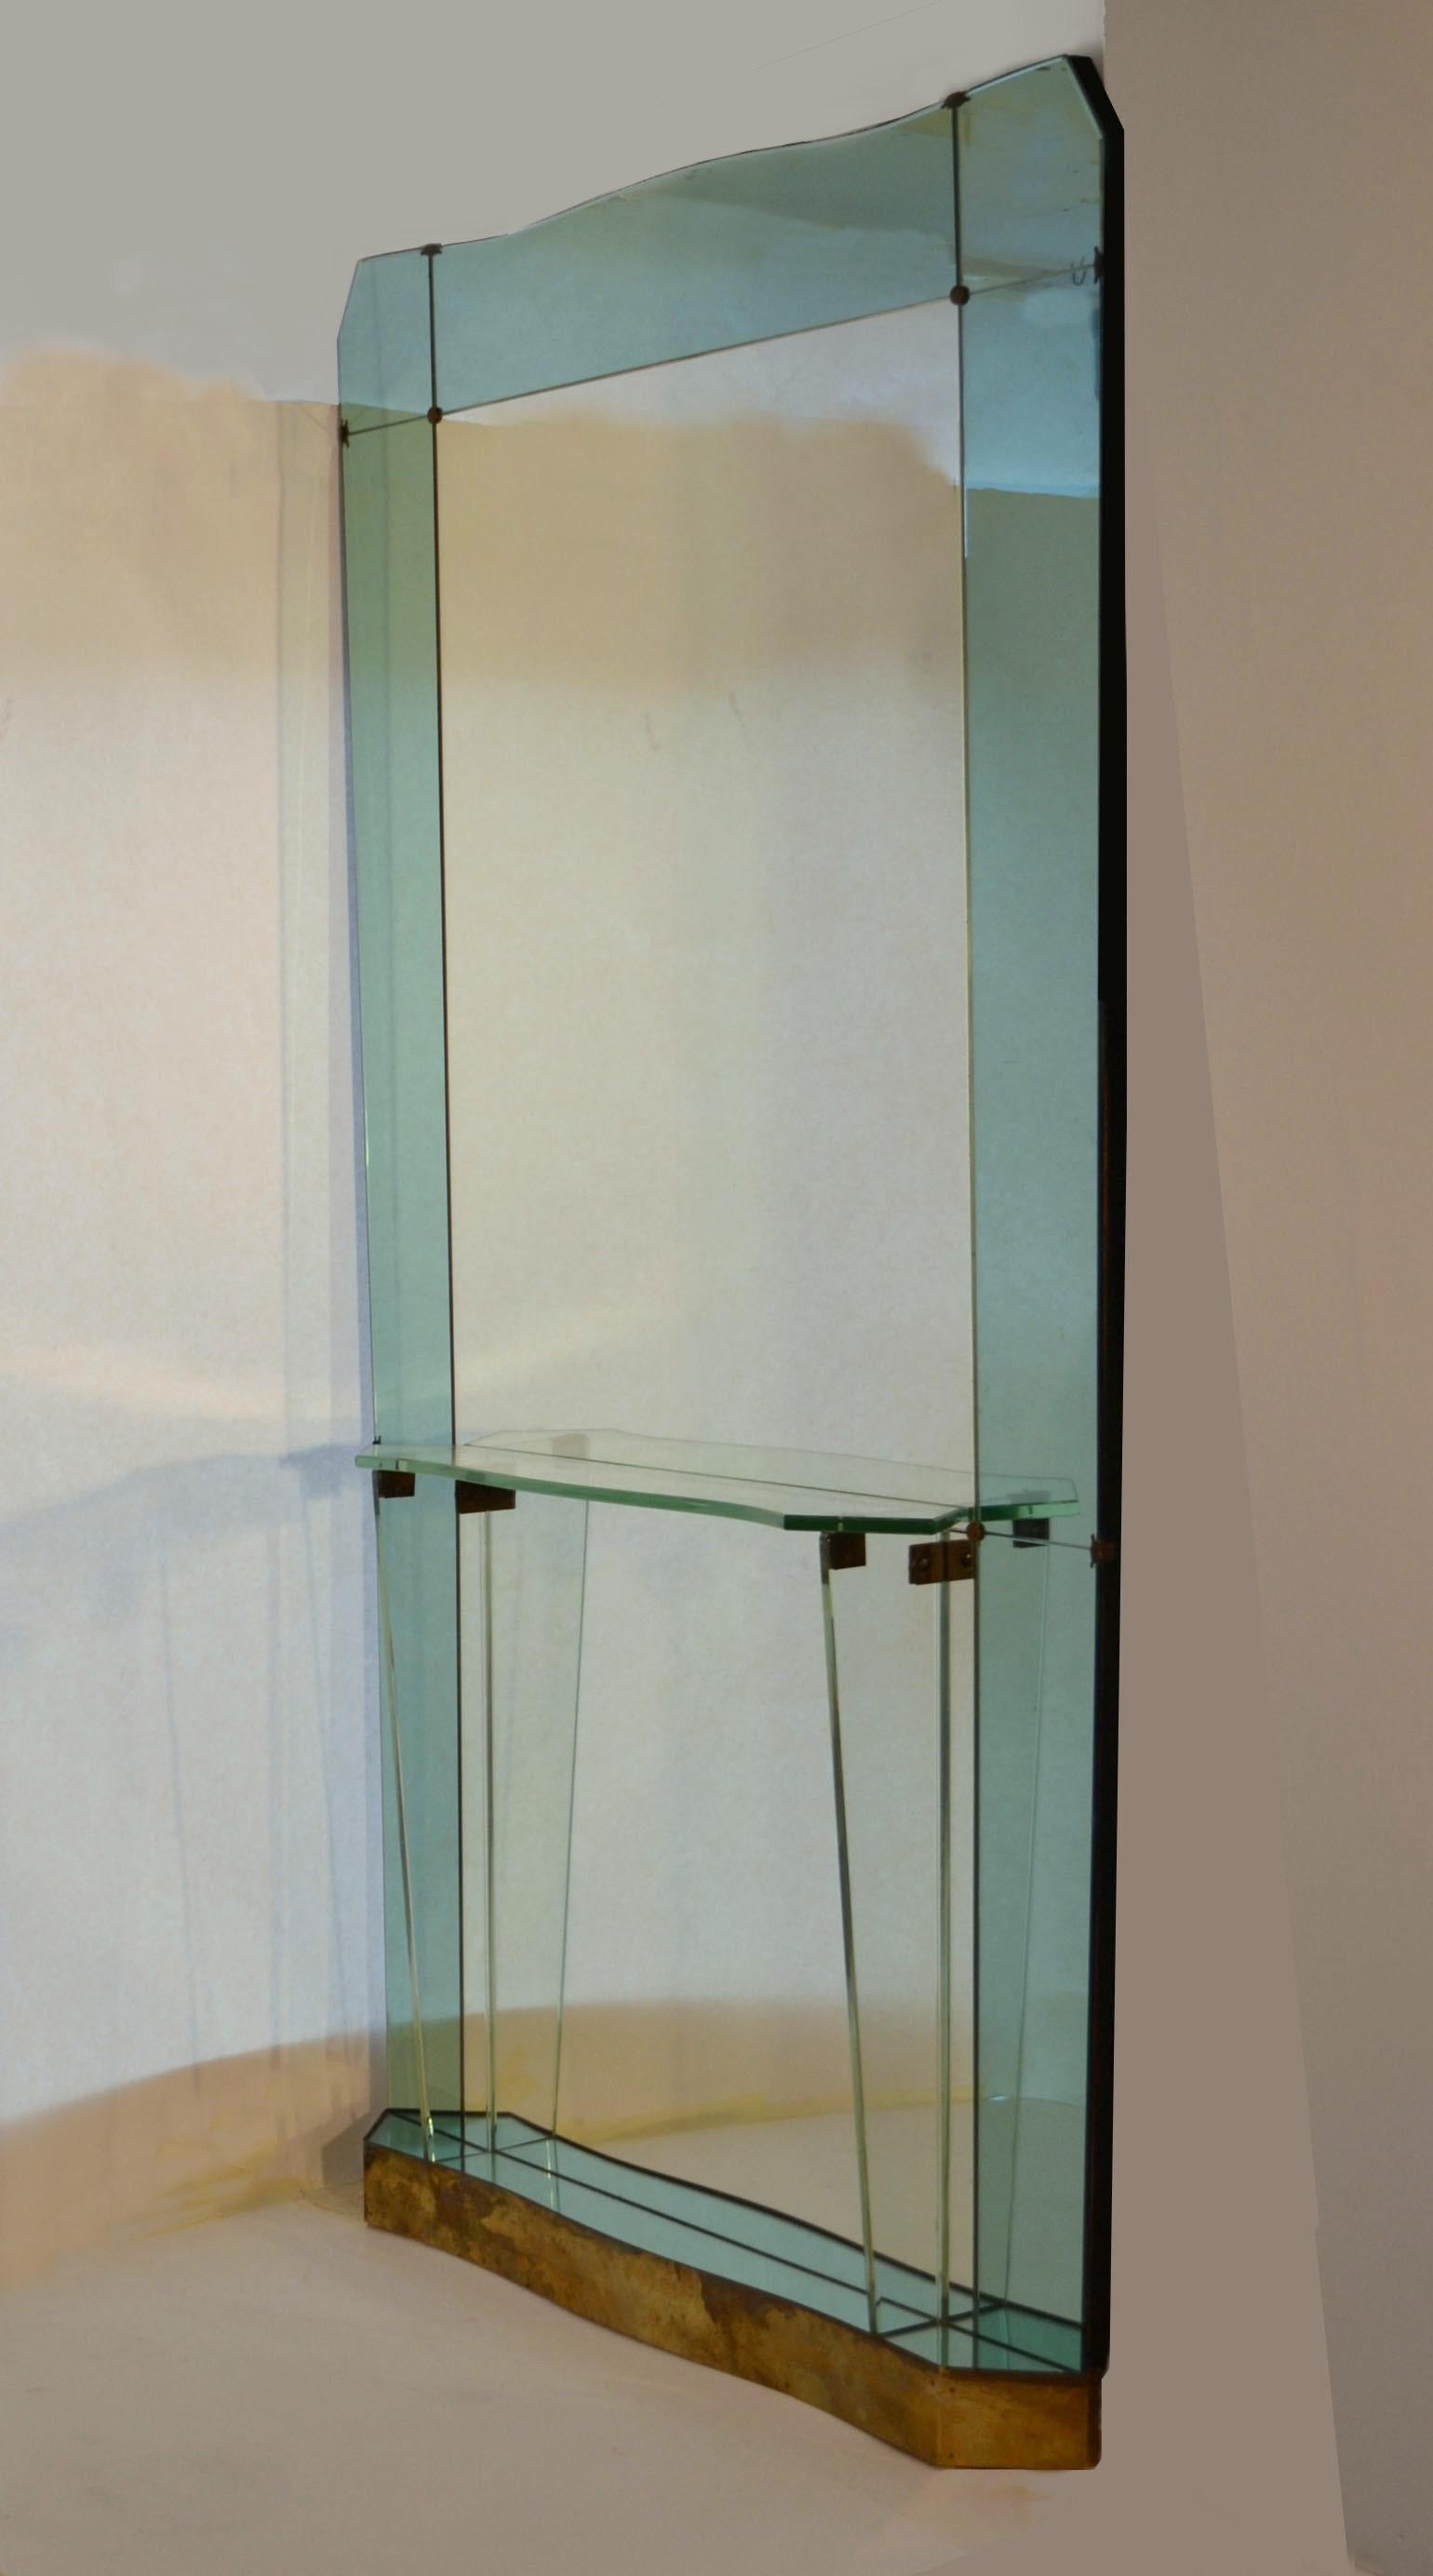 Original et rare miroir de sol surdimensionné avec console en verre attribué à Crystal Arte / Fontana Arte / Santambrogio et De Berti, Italie, vers 1950. Miroir en verre biseauté entièrement original, encadré d'un miroir en verre vert pâle et d'une